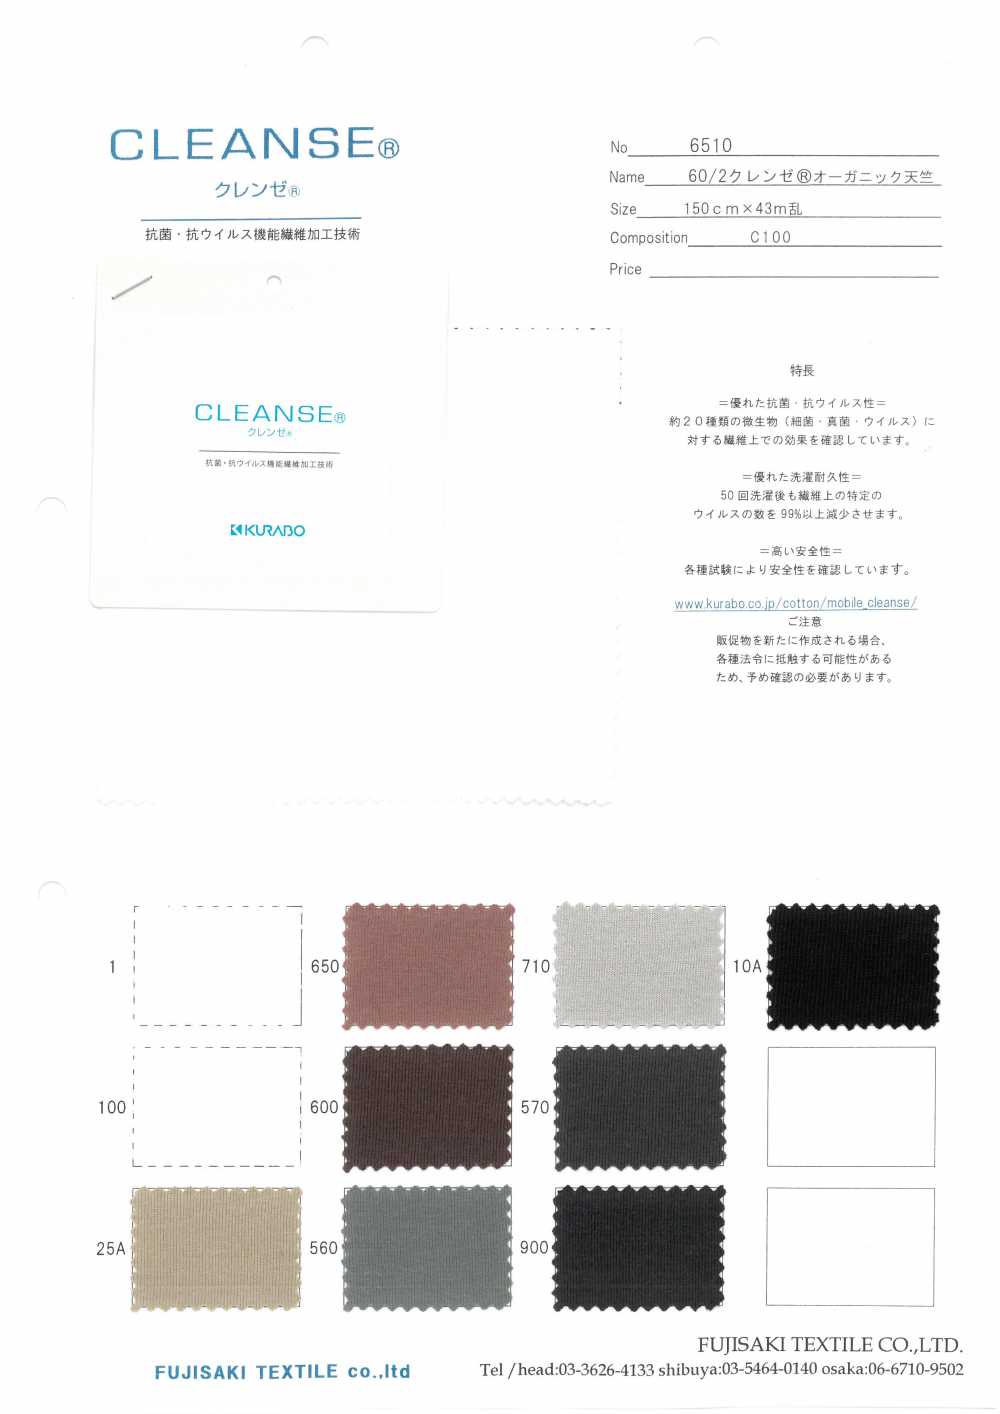 6510 CLEANSE® 유기농 싱글 다이마루[원단] Fujisaki Textile